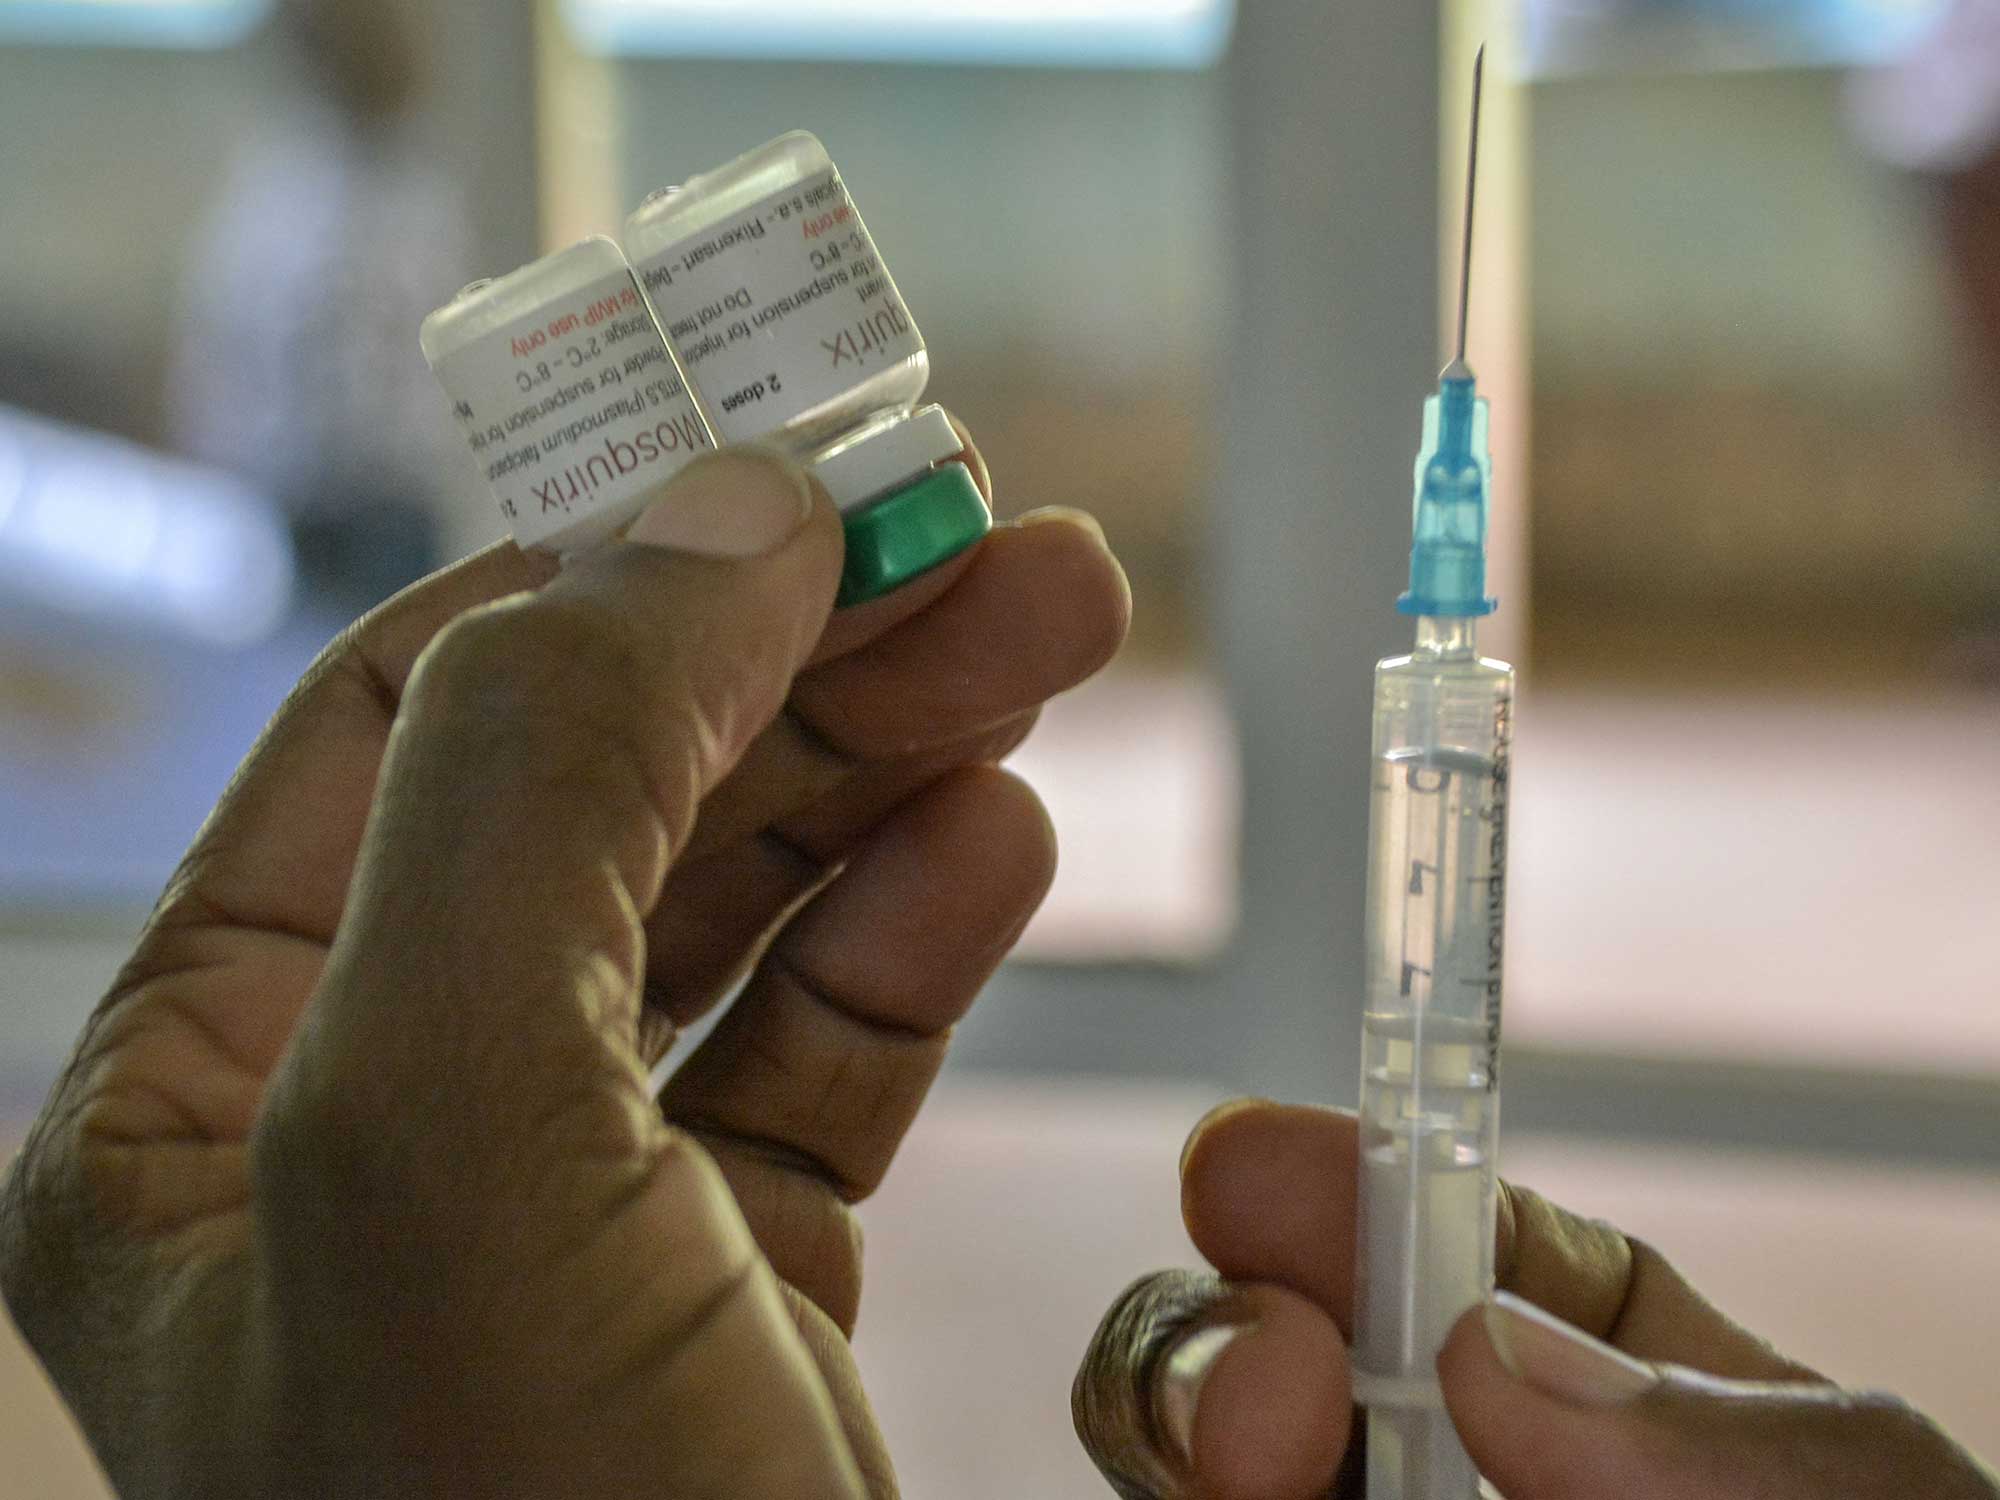 Waarom duurde het 35 jaar om een malariavaccin te krijgen?